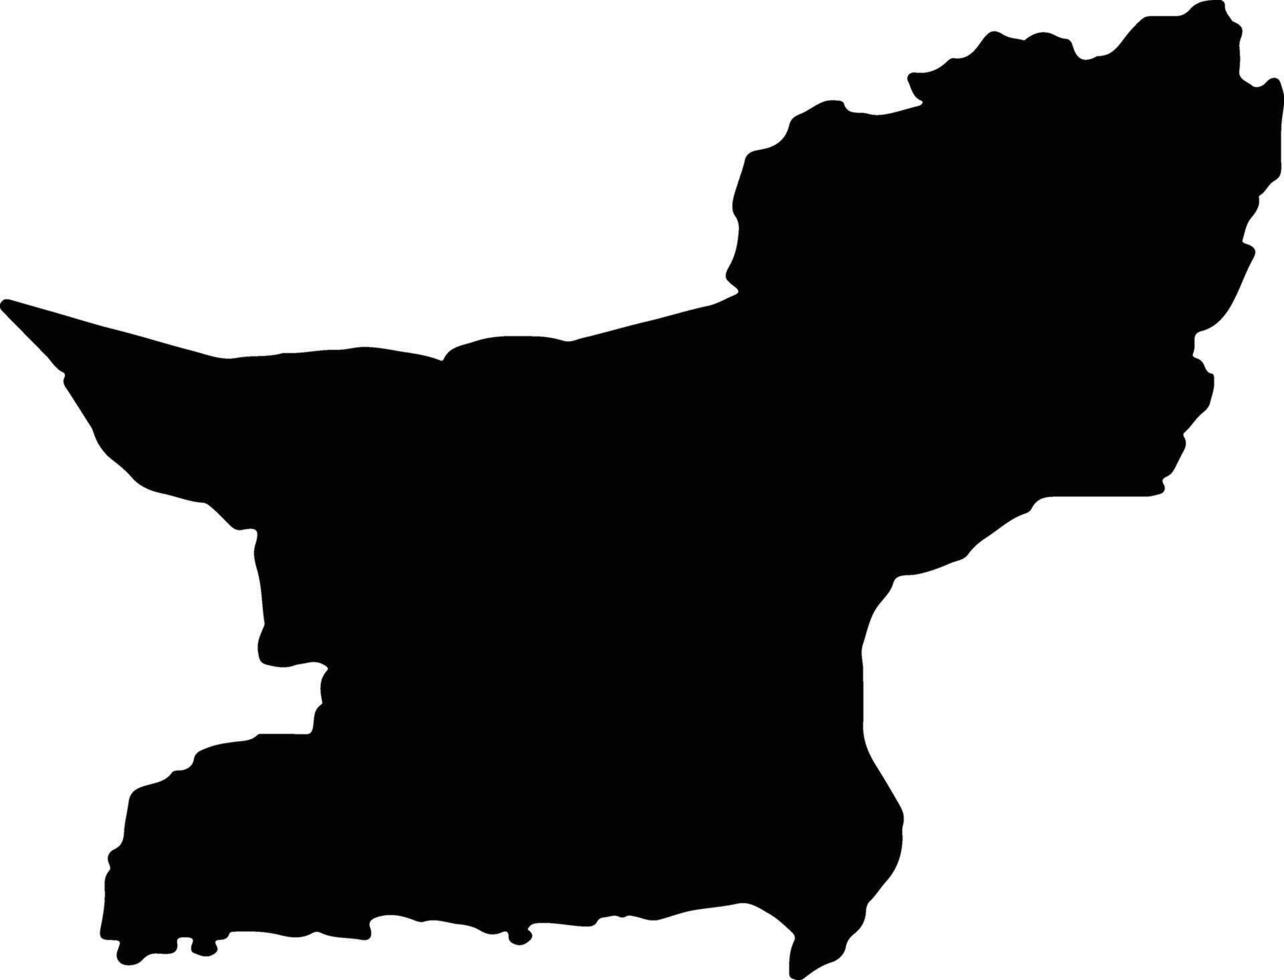 baloutchistan Pakistan silhouette carte vecteur